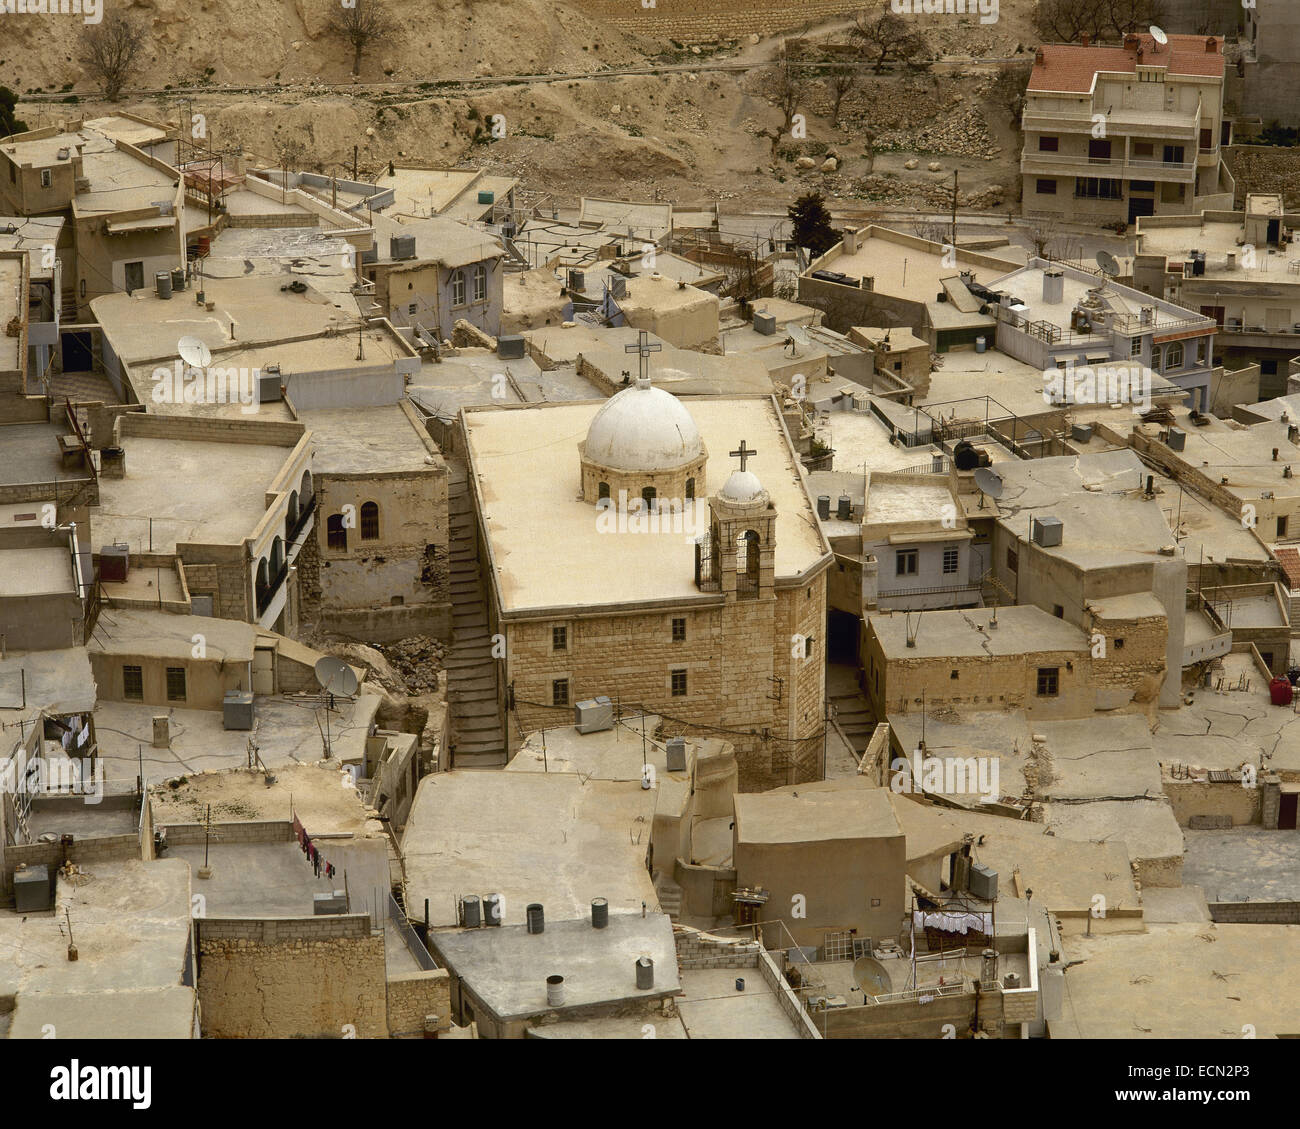 Syrien. MA´Loula. Stadt in den zerklüfteten Bergen gebaut. Dorf, wo noch westlichen Aramäisch gesprochen wird. In der Nähe von Osten. Foto vor dem syrischen Bürgerkrieg. Stockfoto